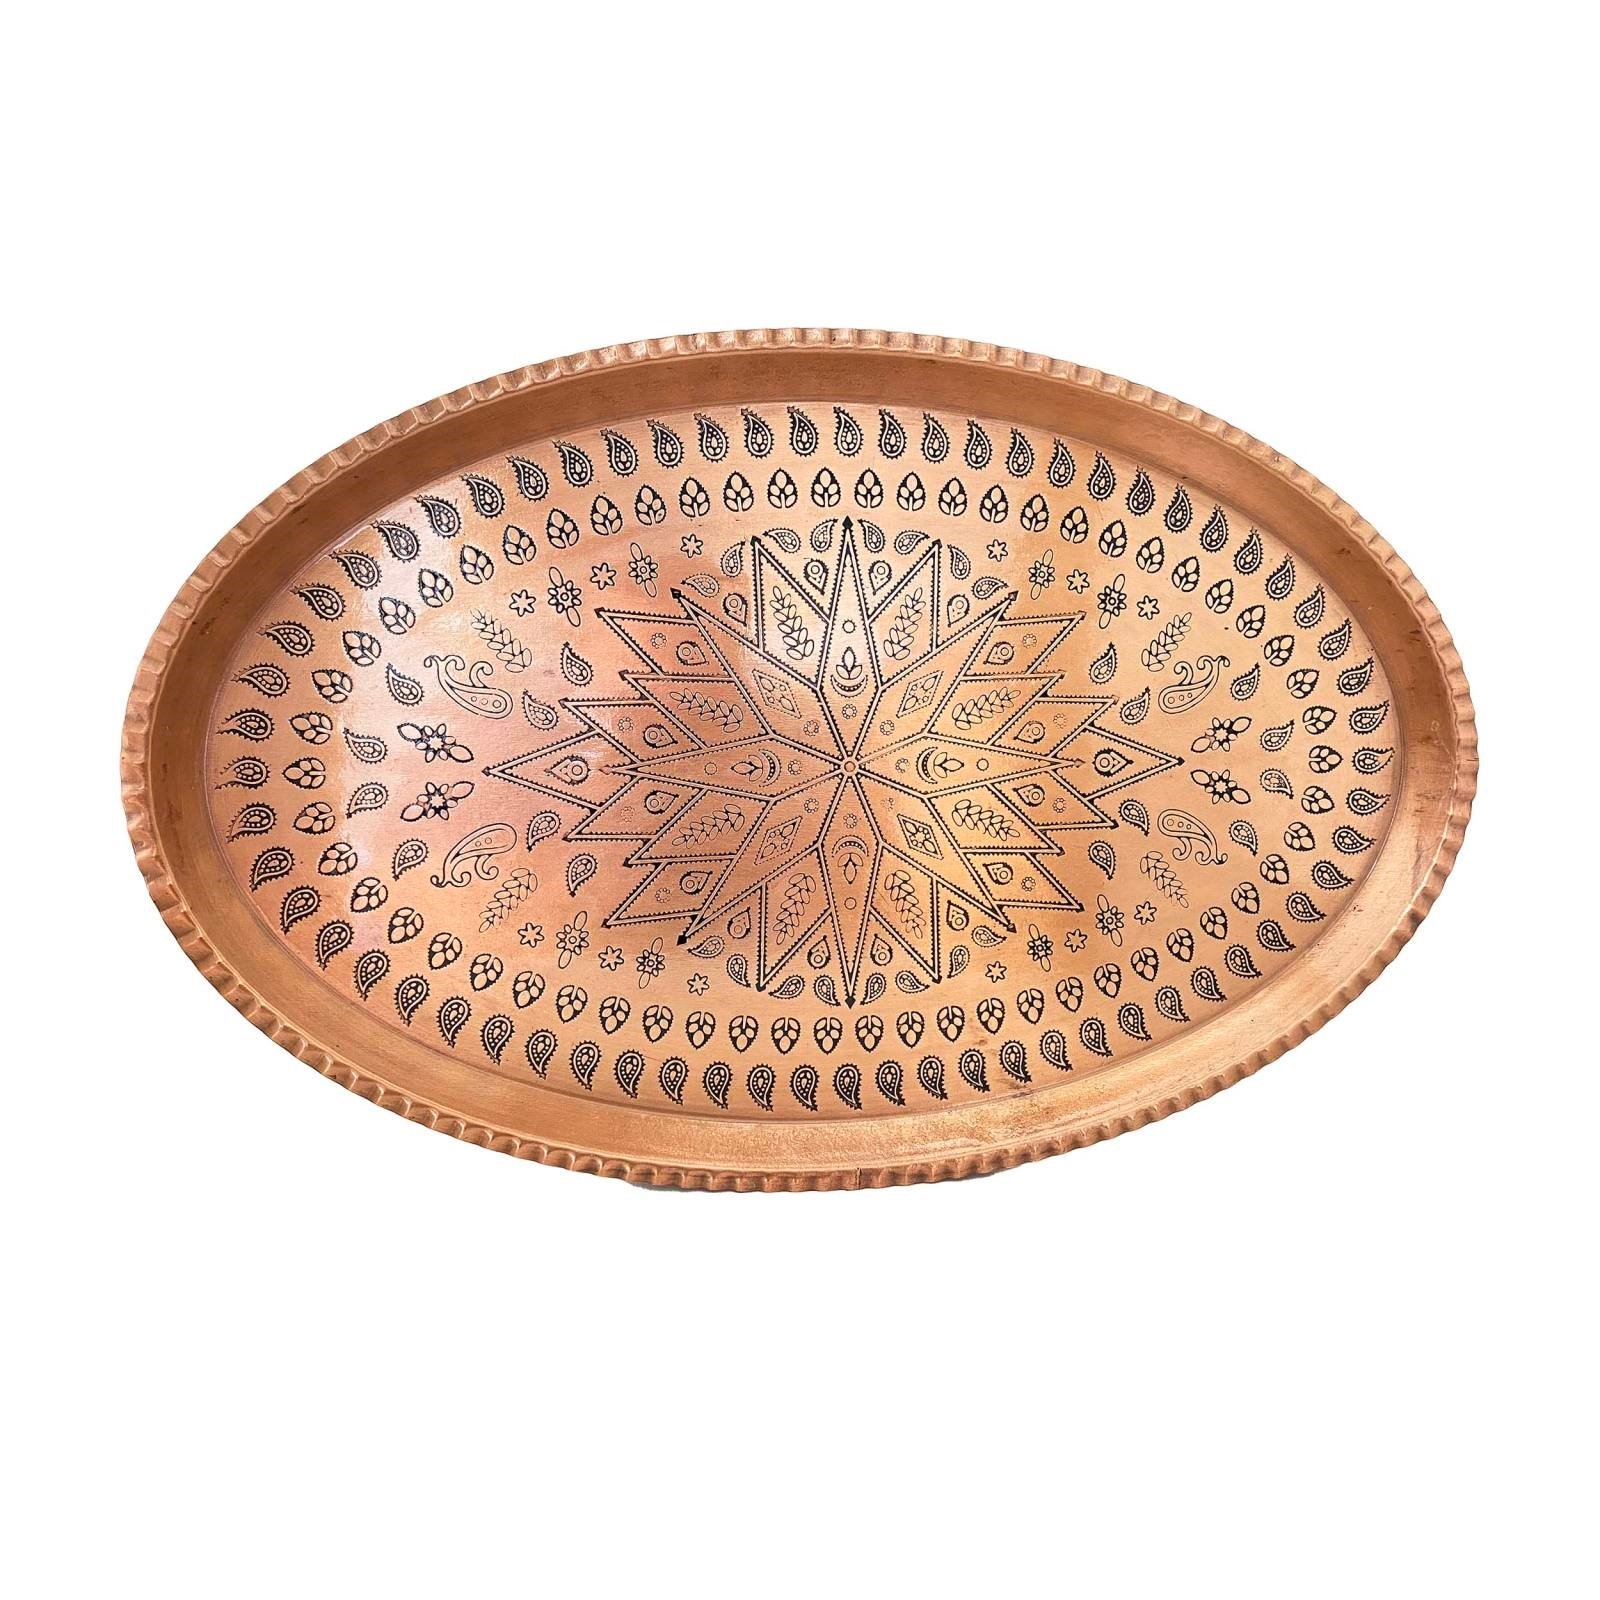 Handicraft Copper tray model oval code 2005,copper persian,persian handicrafts copper